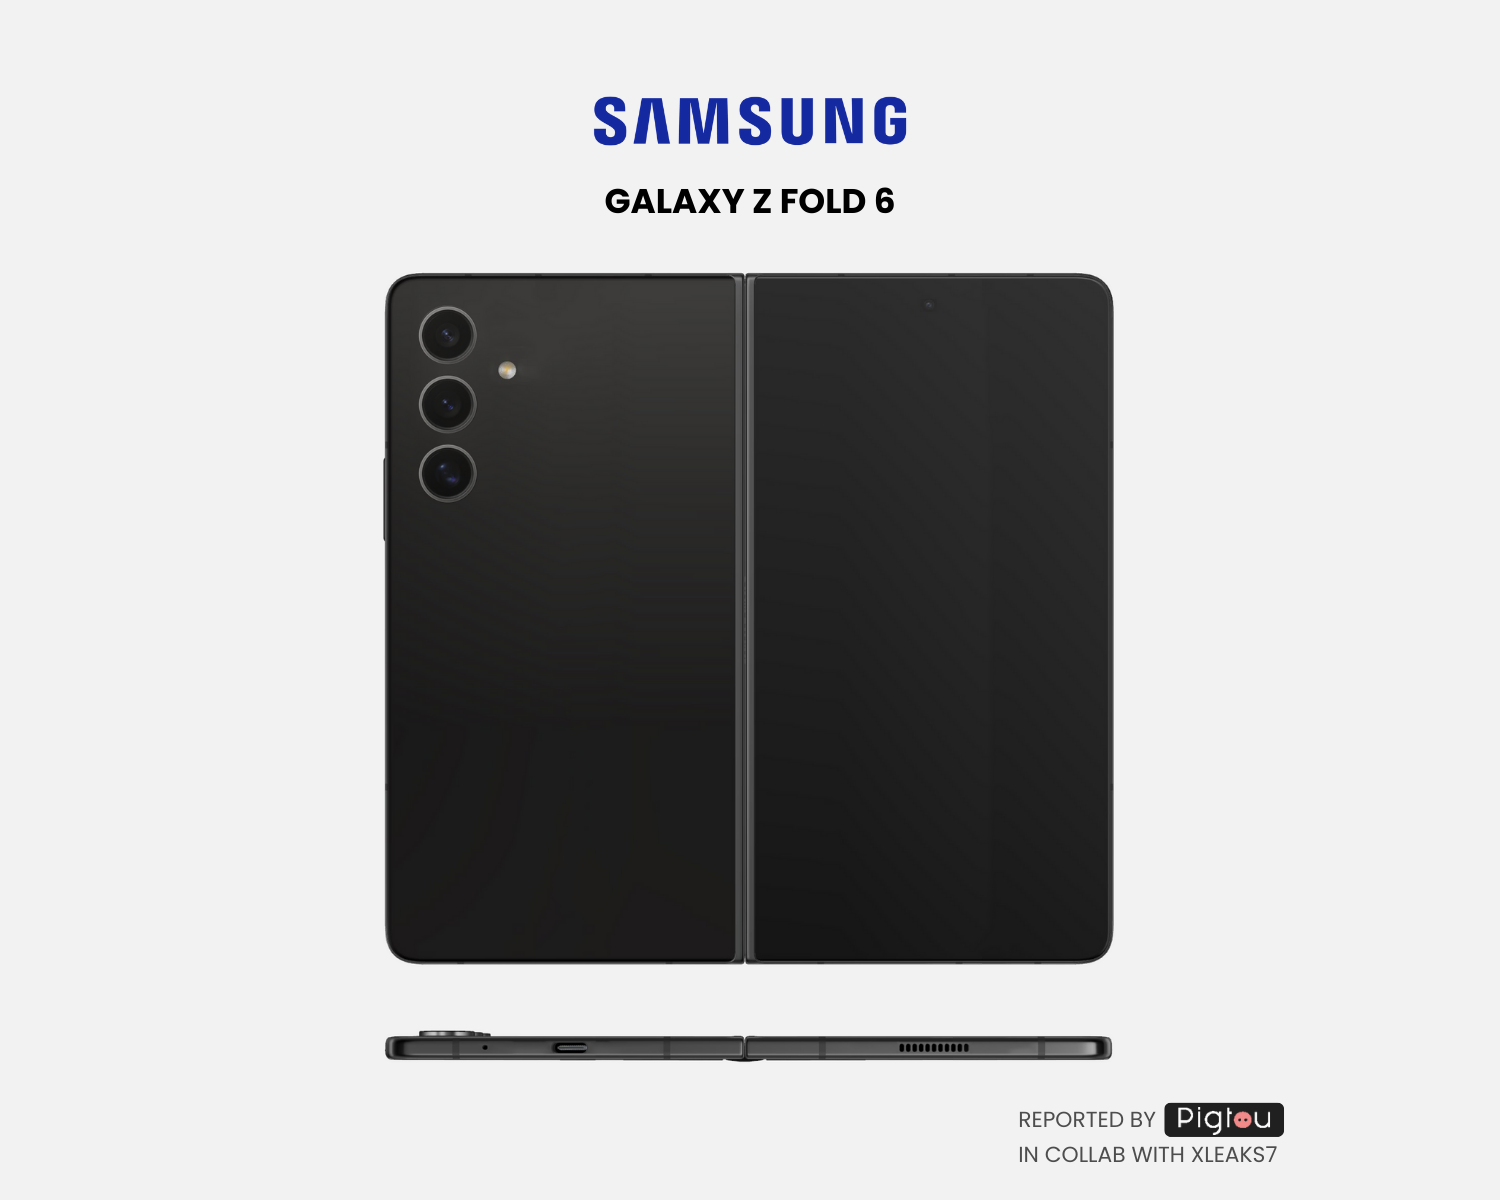 Es probable que el Samsung Galaxy Z Fold 6 sea más delgado con pantallas más anchas, puede incluir un modelo más económico